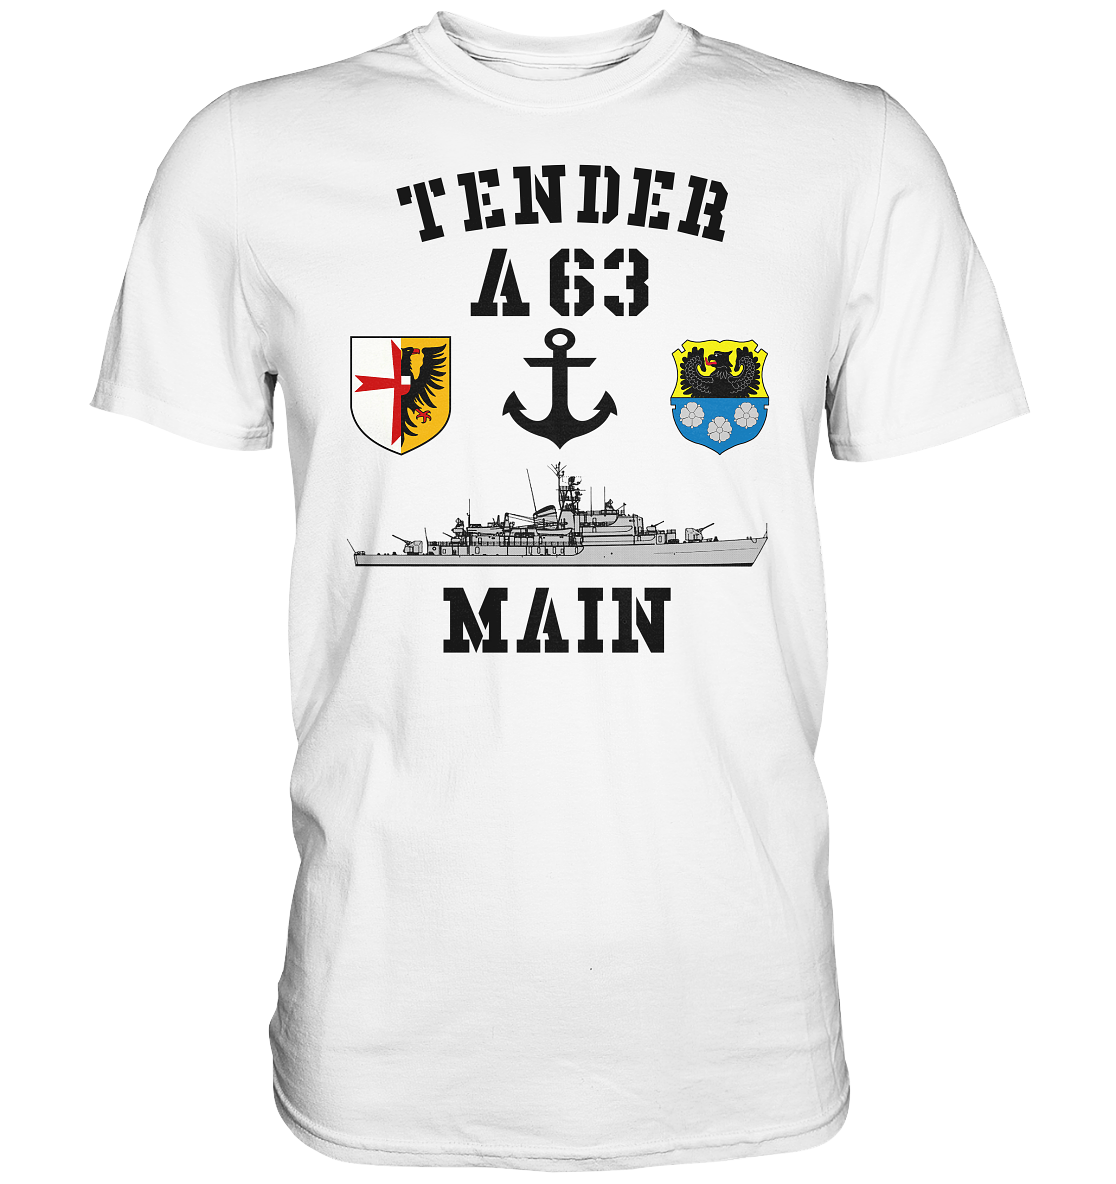 Tender A63 MAIN 5.SG ANKER - Premium Shirt